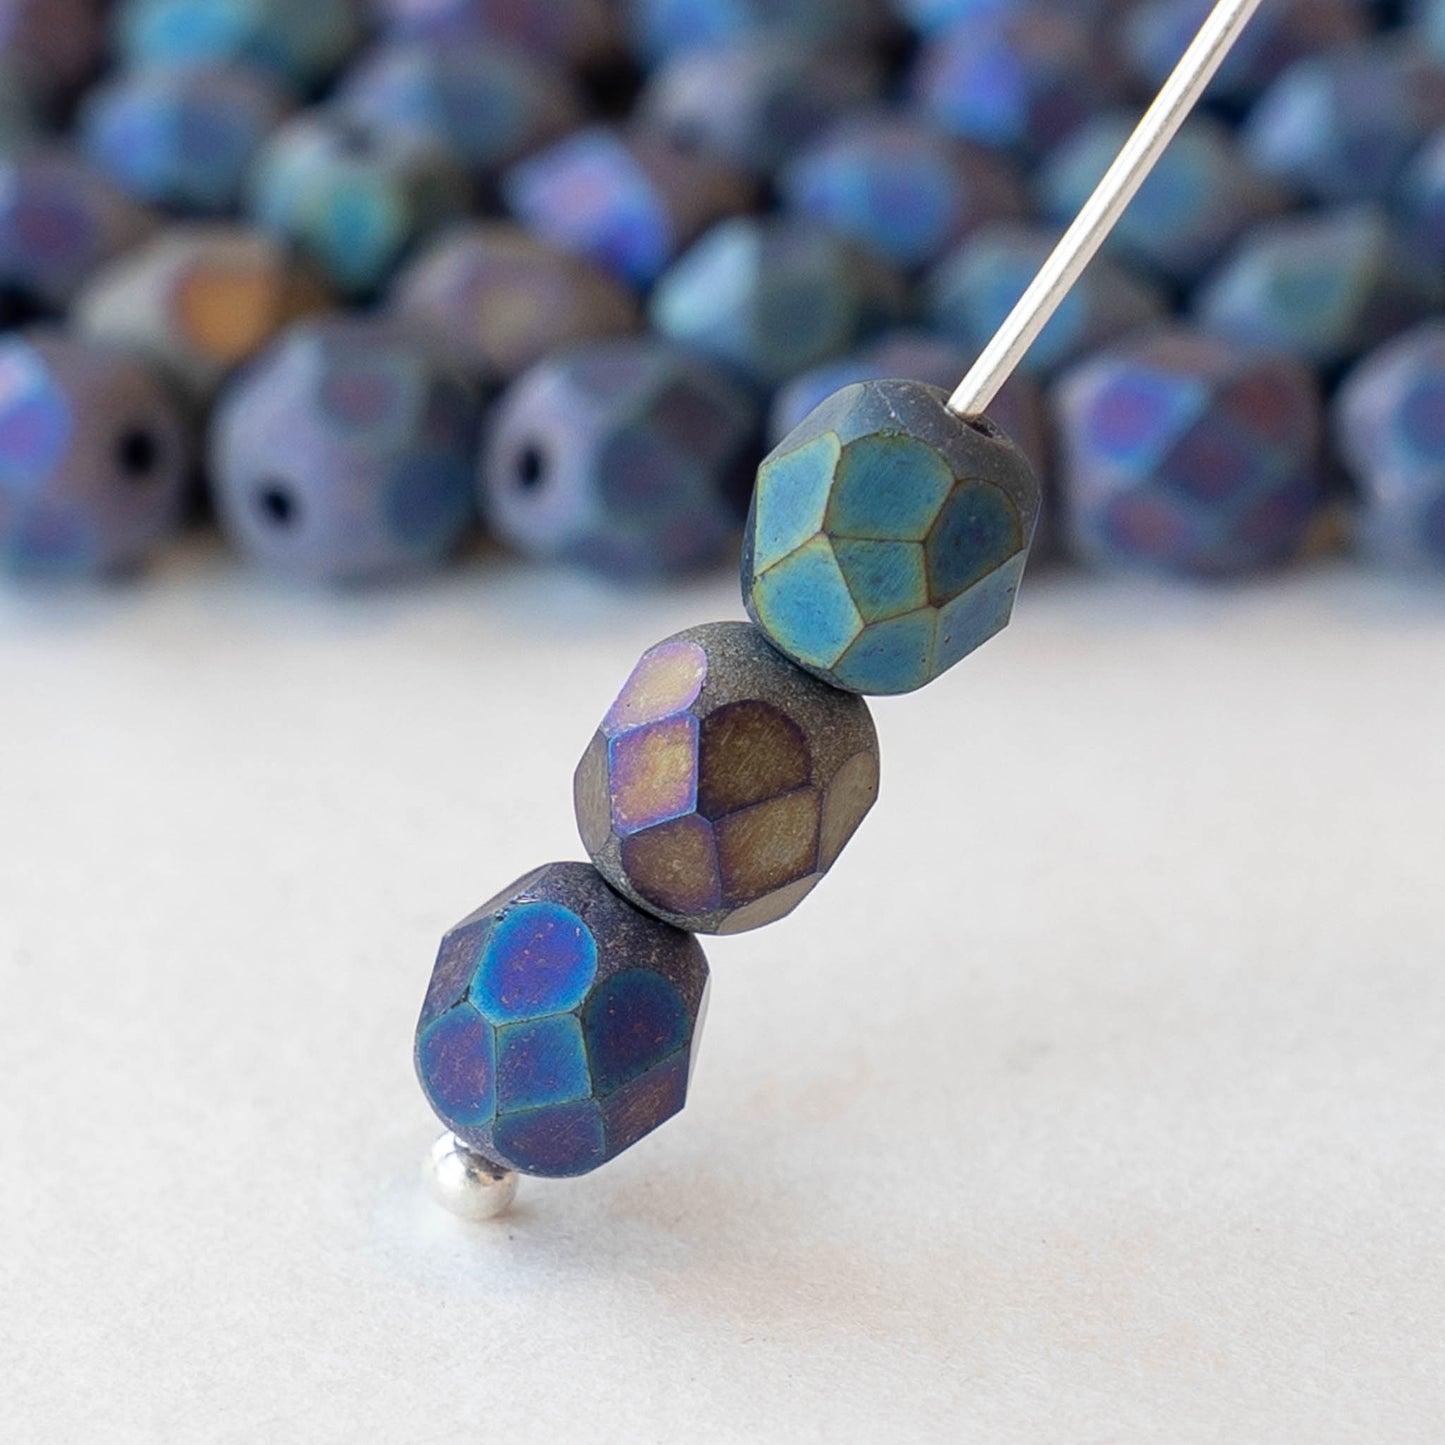 6mm Round Firepolished Beads - Matte Blue Iris -  50 Beads